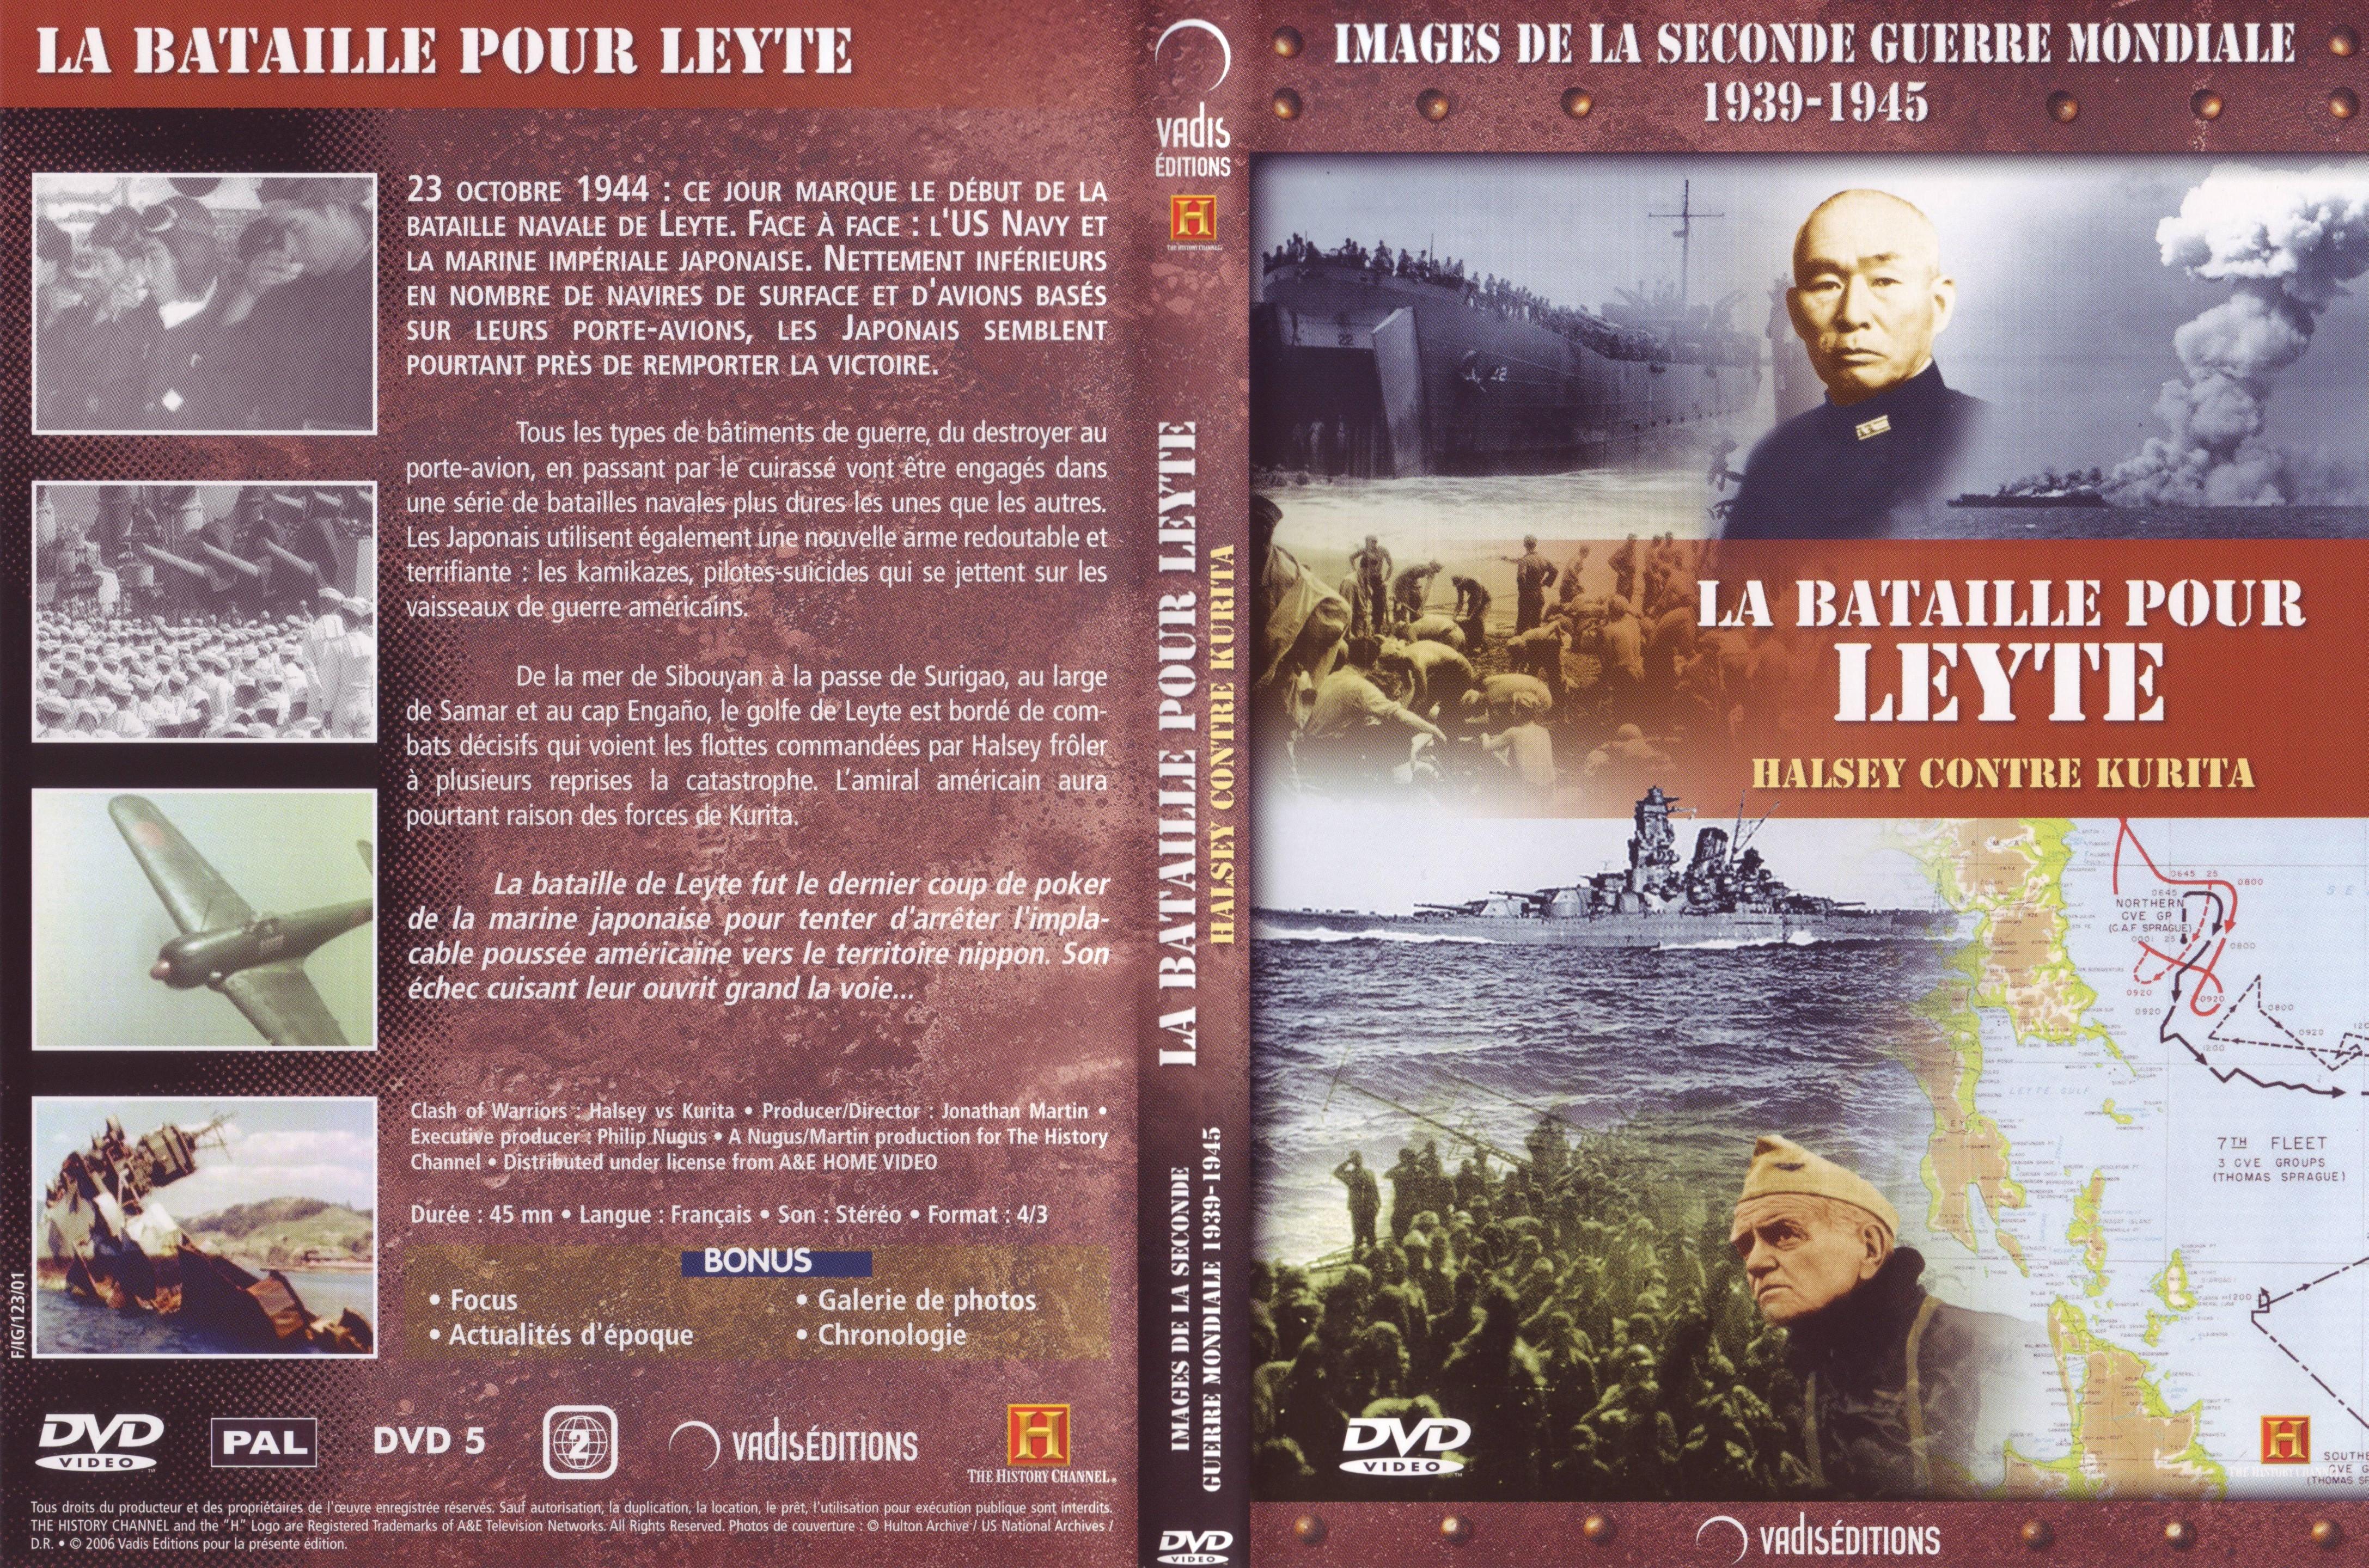 Jaquette DVD Images de la seconde guerre mondiale - La bataille pour Leyte